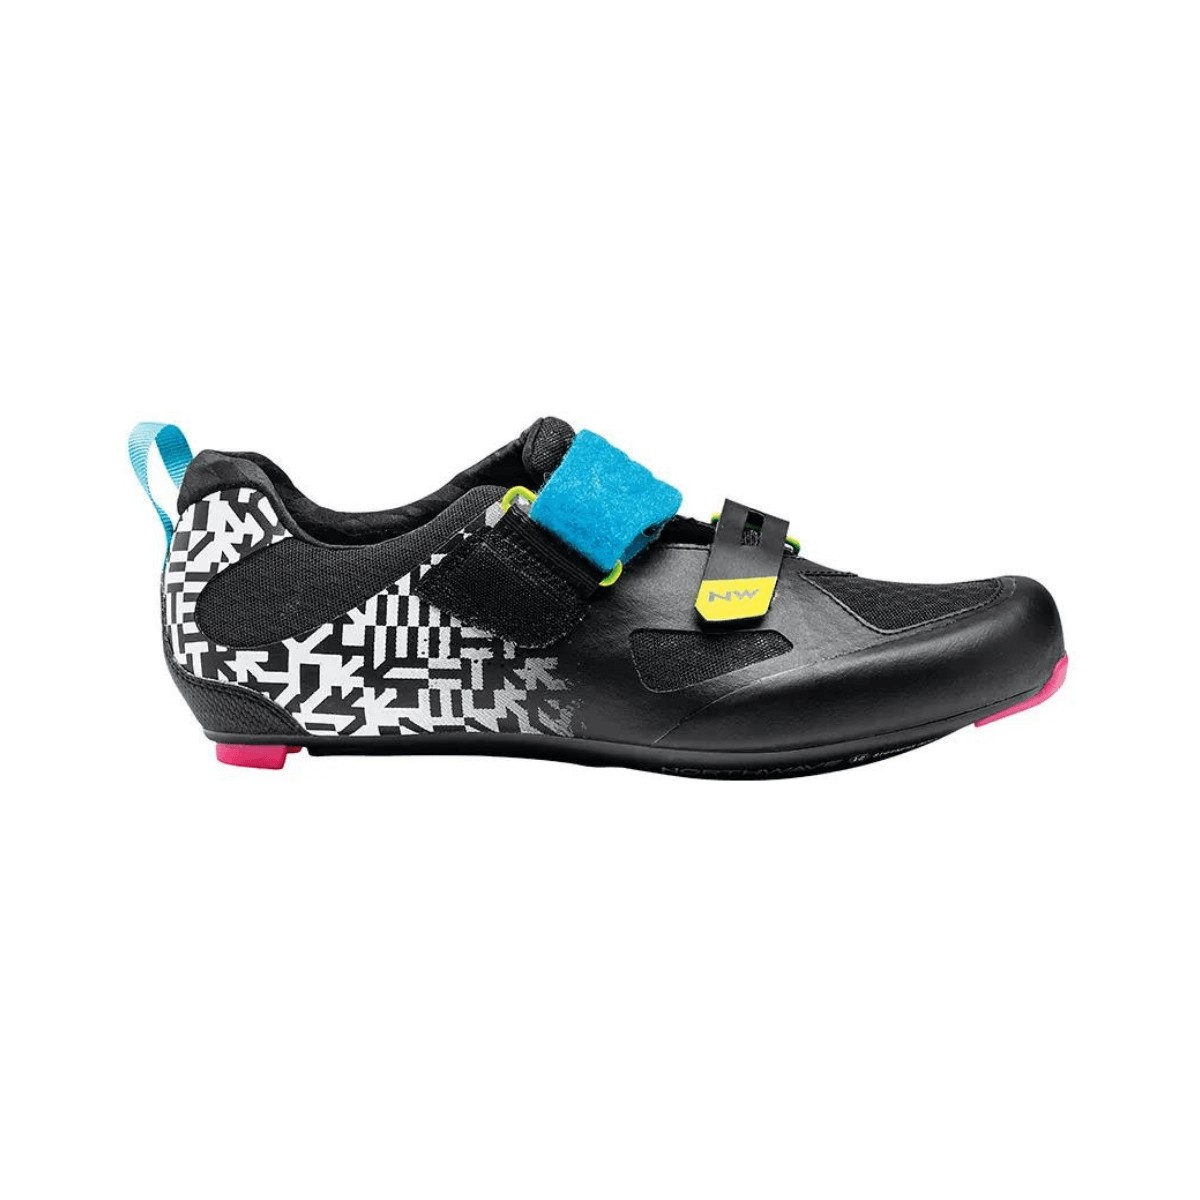 Chaussures Northwave Tribute 2 Carbon Triathlon Noir-Multicolore, Taille 42 - EUR